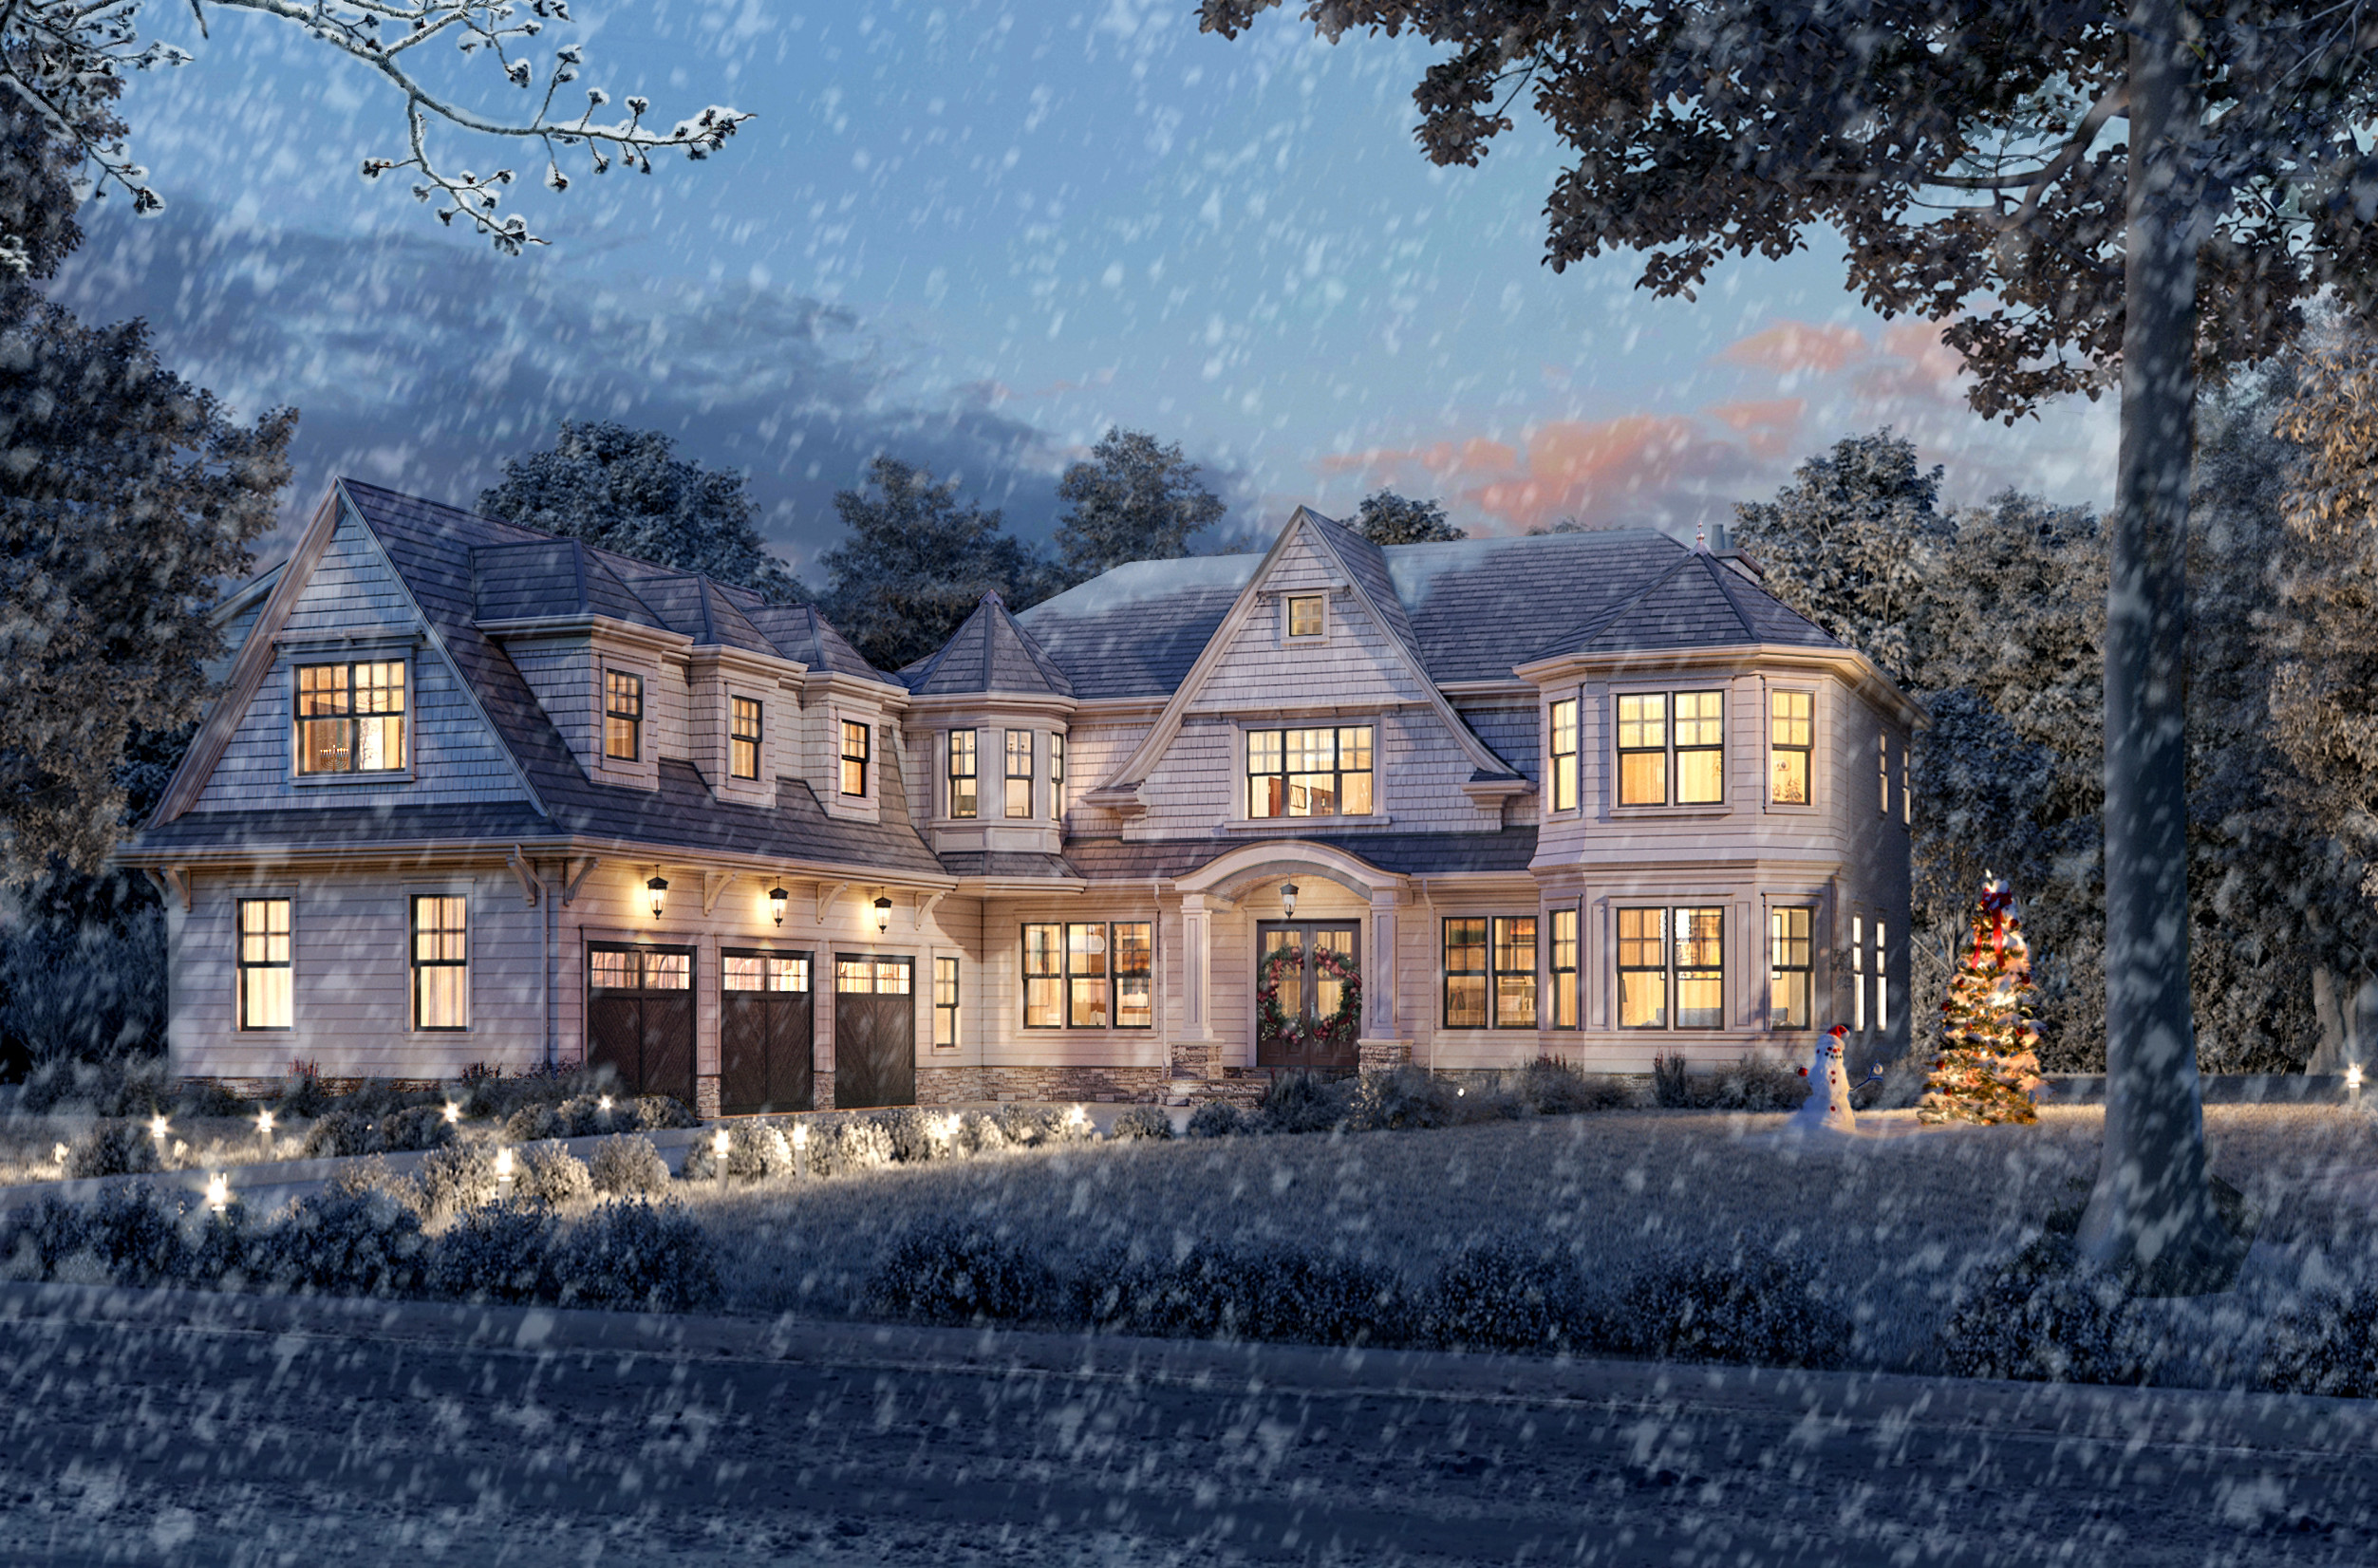 Whimsical White Winter Wonderland Home